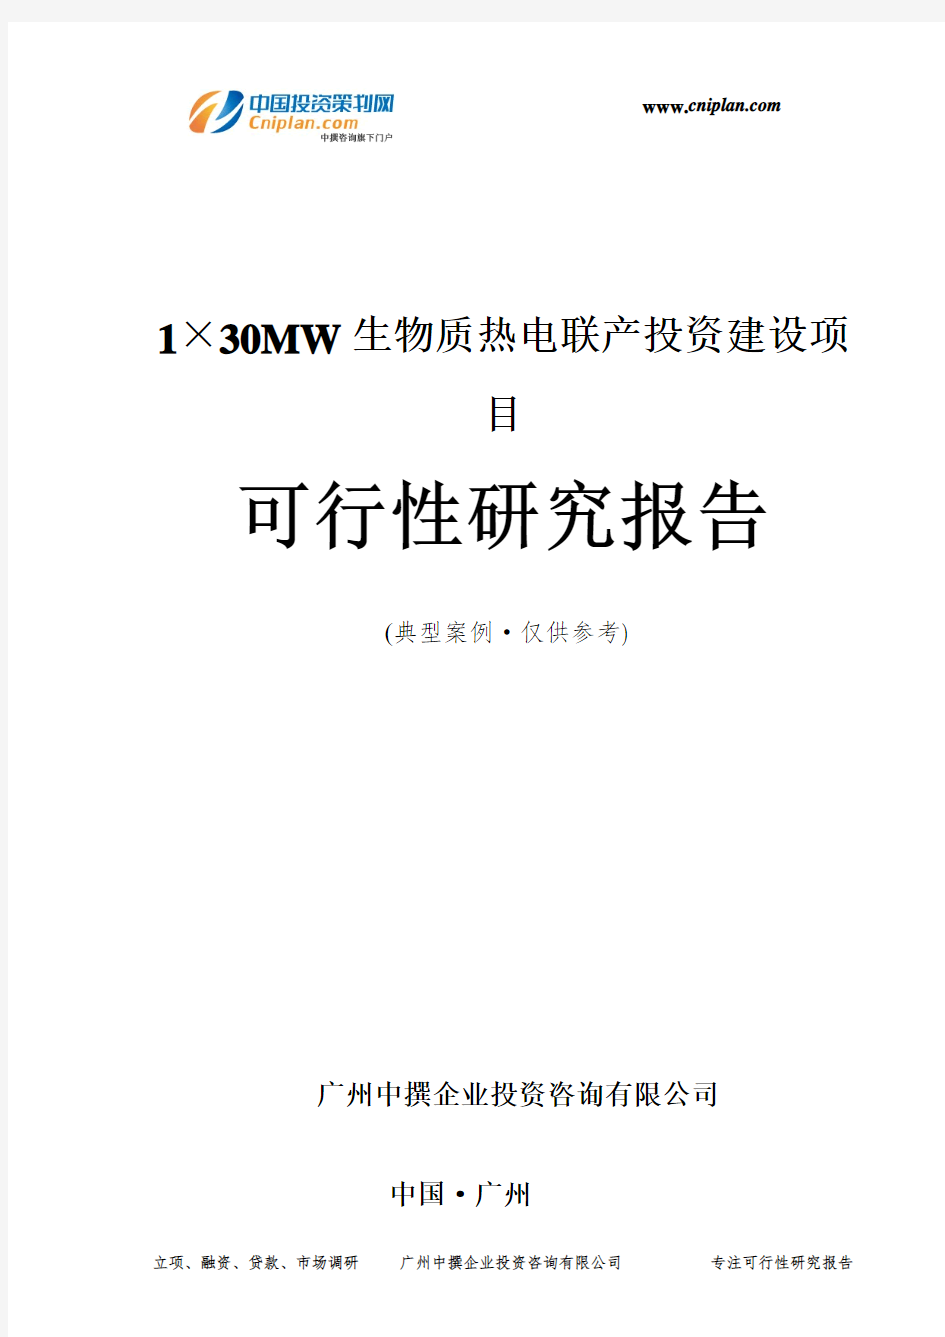 1×30MW生物质热电联产投资建设项目可行性研究报告-广州中撰咨询